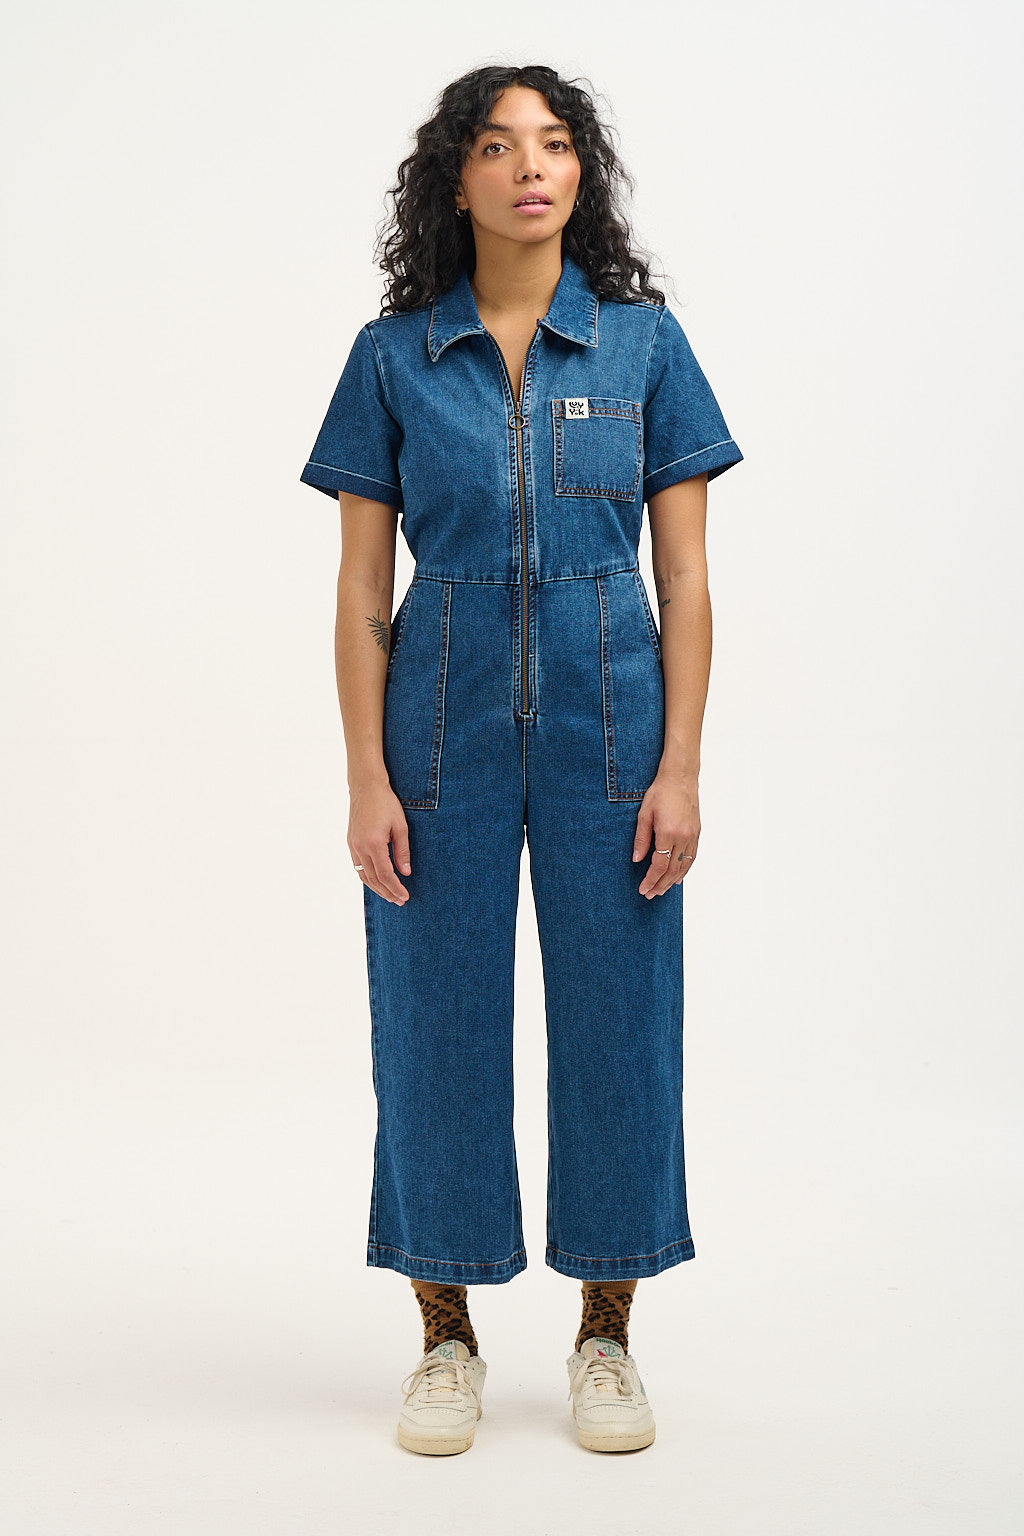 Urban Bliss Blue Denim Long Sleeve Boilersuit | New Look